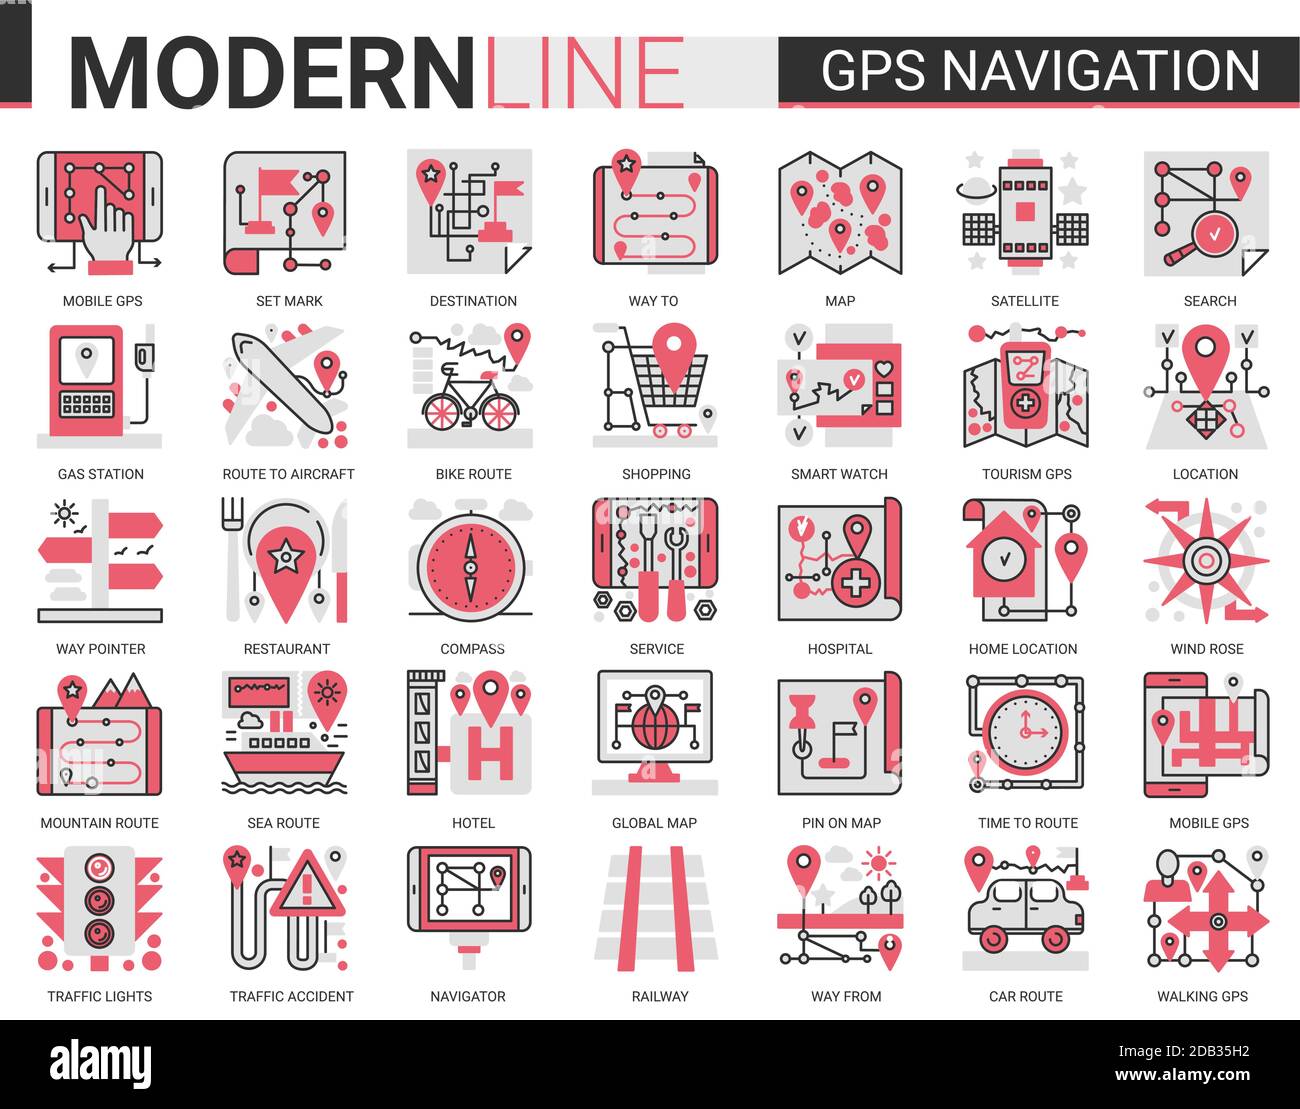 GPS Navigation Service komplexe Konzept flache Linie Symbol Vektor Illustration Set Sammlung von Reisesymbolen für mobile Navigator, Karte Geo-Position von zu Hause oder Reise Ziel. Stock Vektor